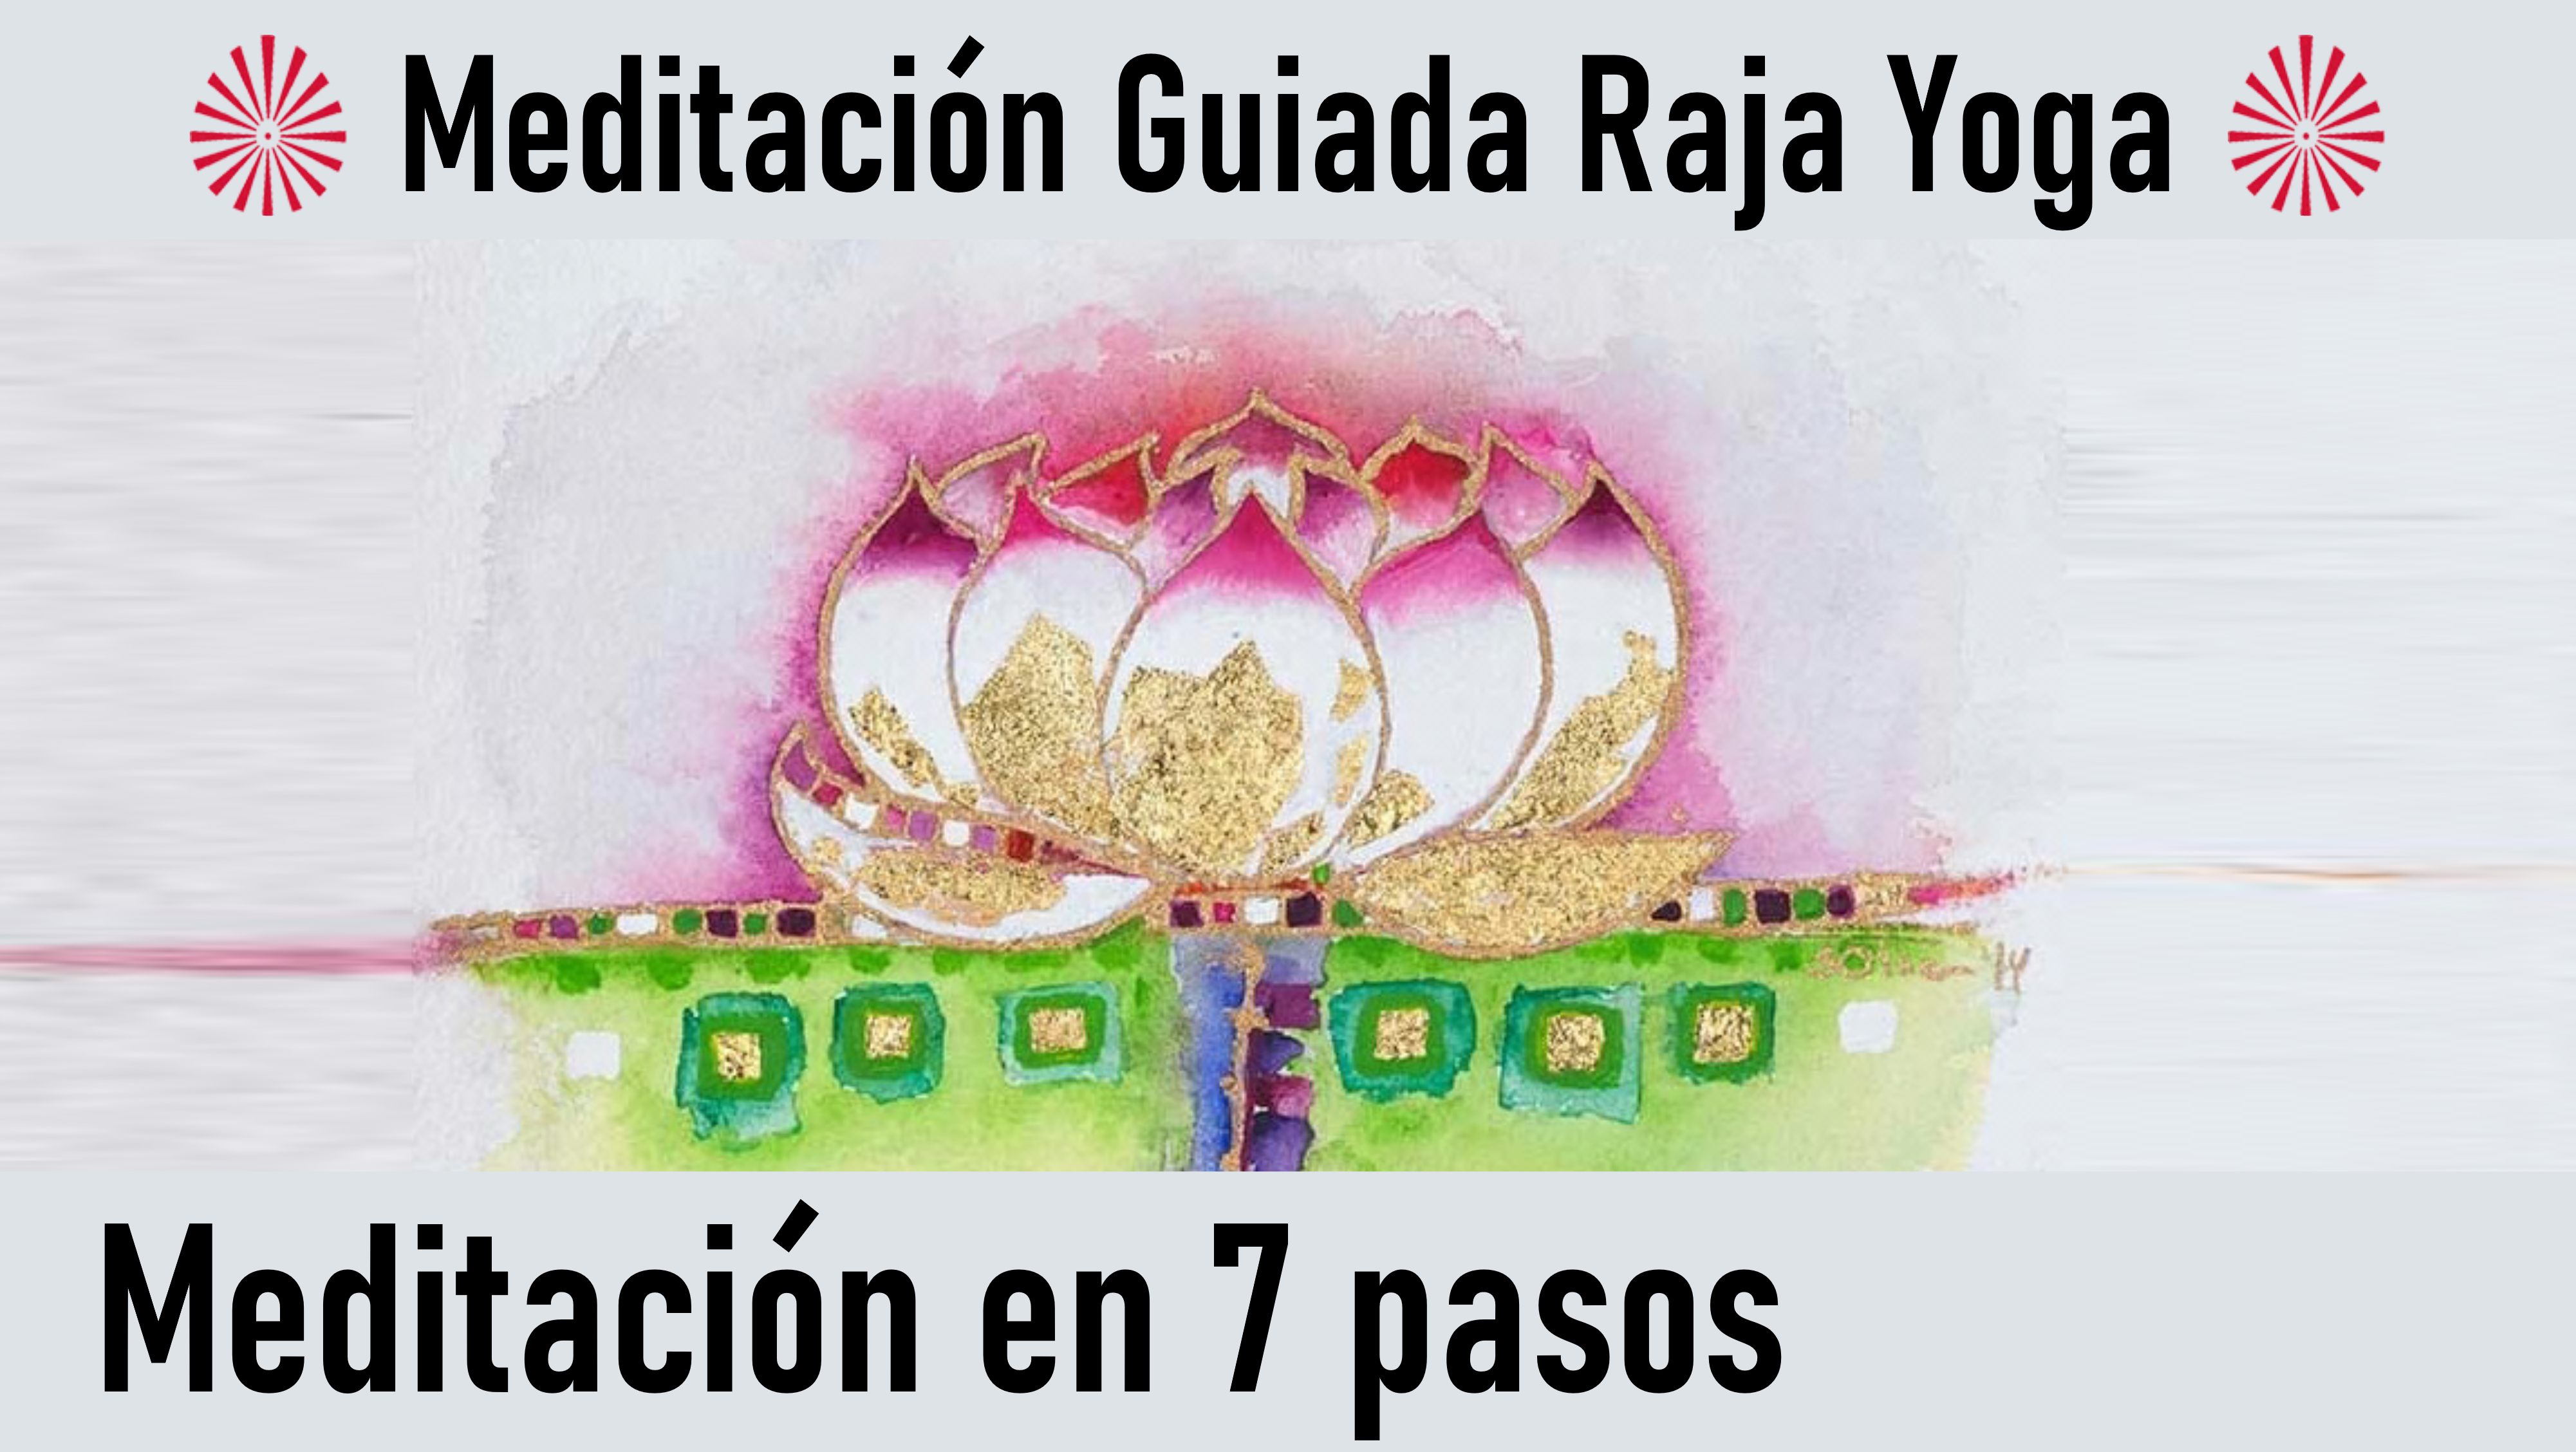 Meditación Raja Yoga: Meditación en 7 pasos (13 Junio 2020) On-line desde Valencia